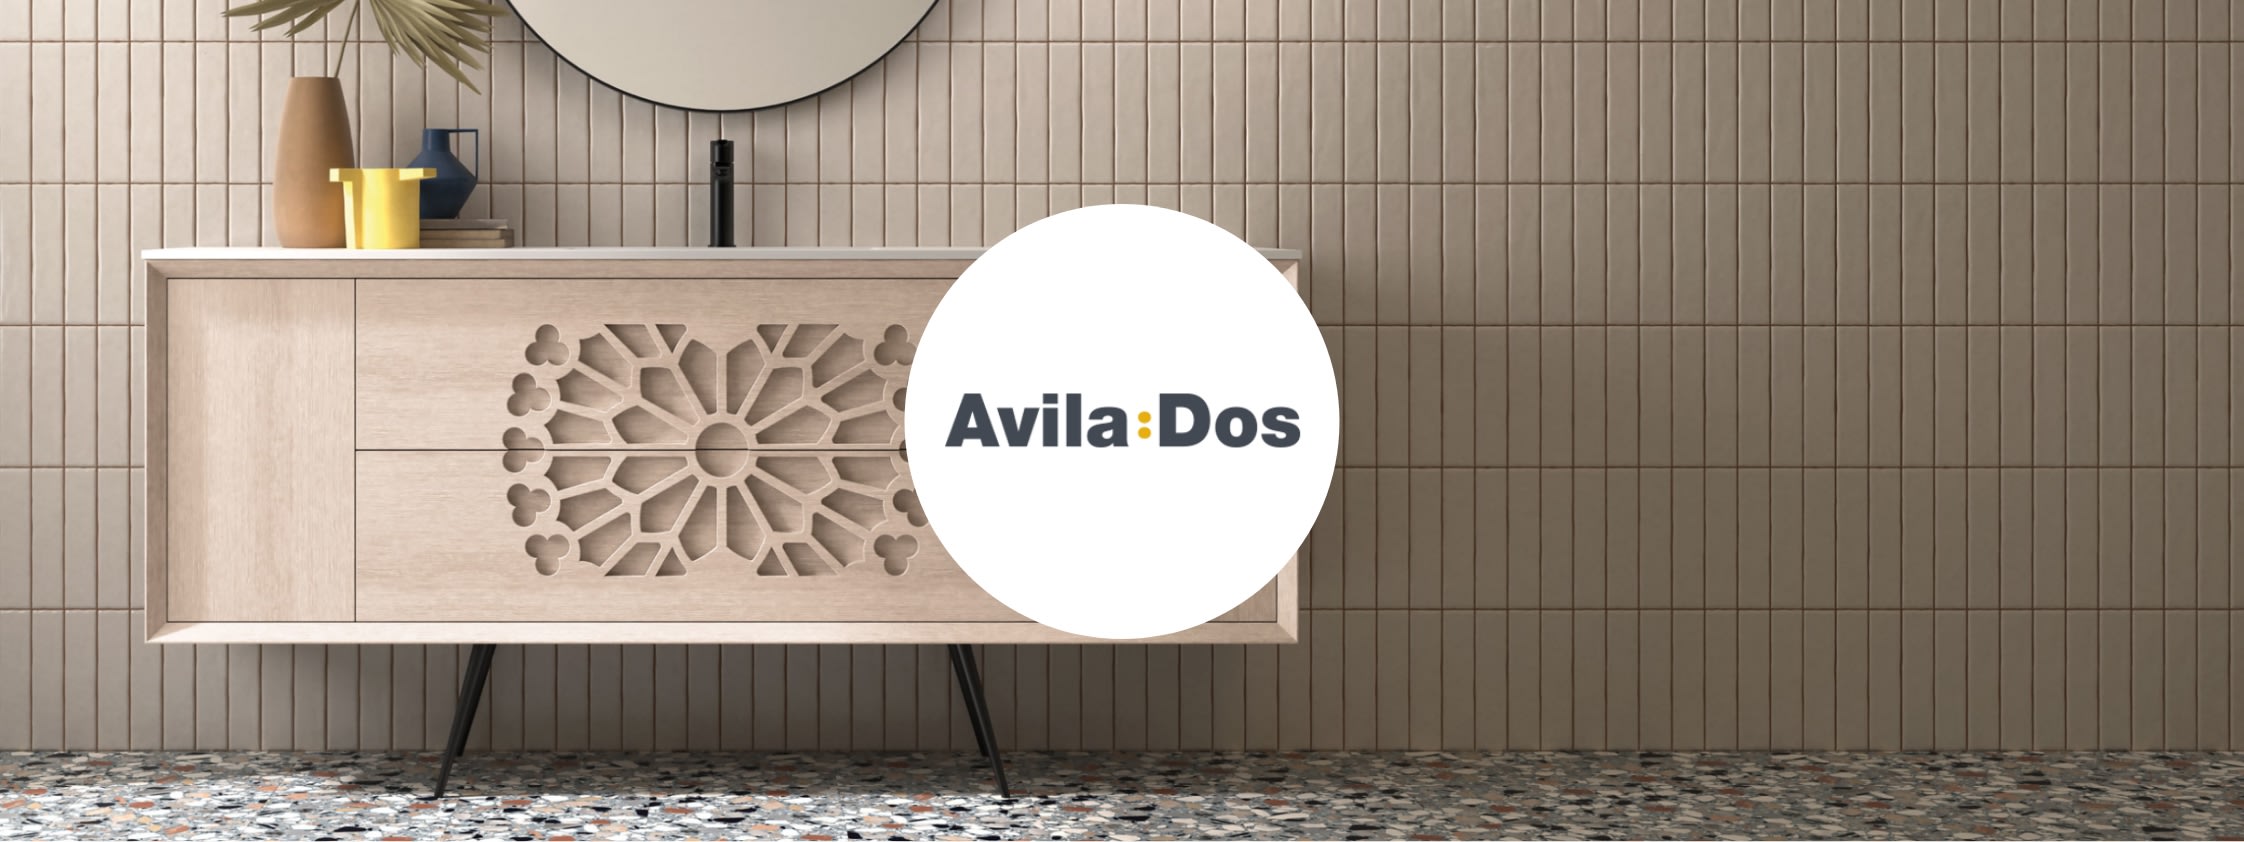 Colecciones y productos de la marca - Avila Dos